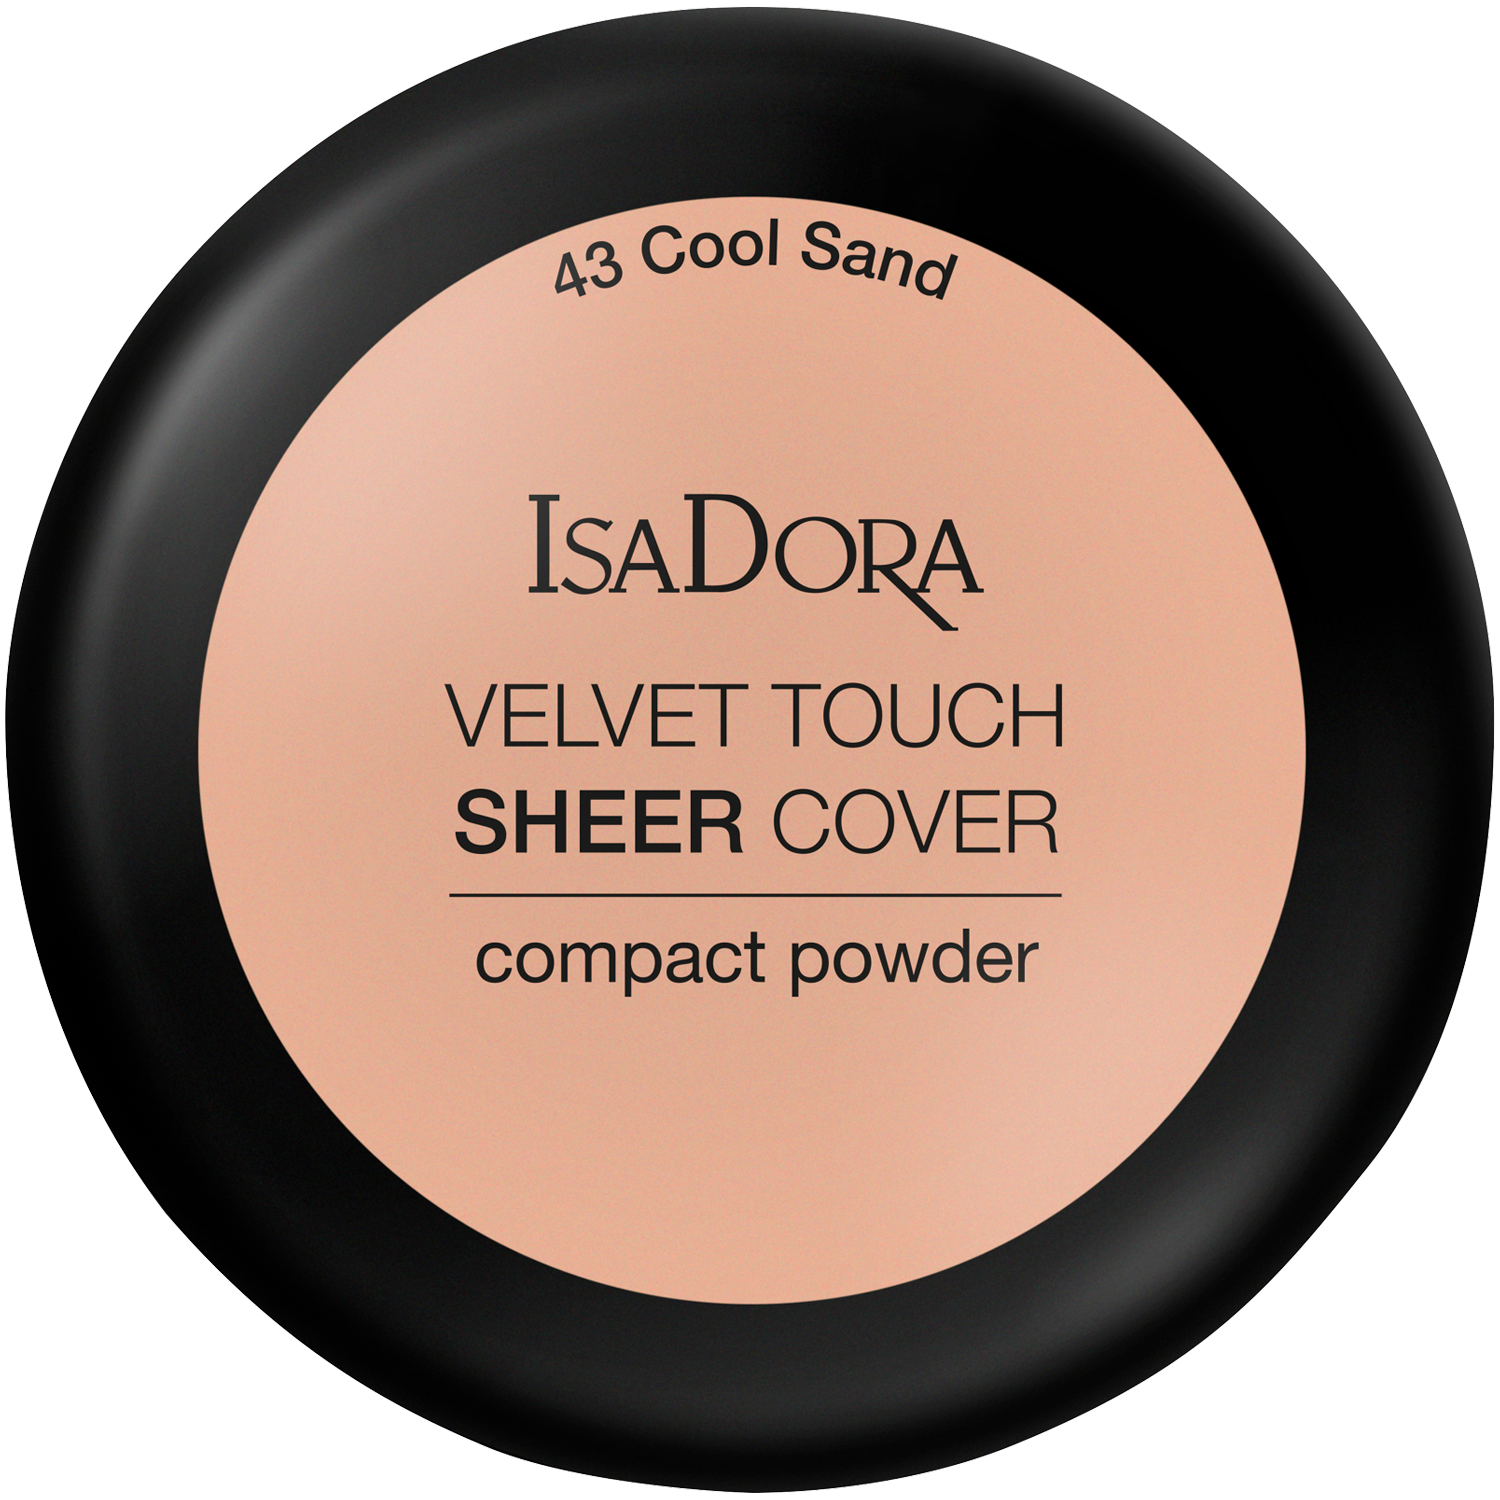 la femme 5588 velvet touch face powder banana Пудра для лица 43 холодный песок Isadora Velvet Touch Sheer Cover, 7,5 гр